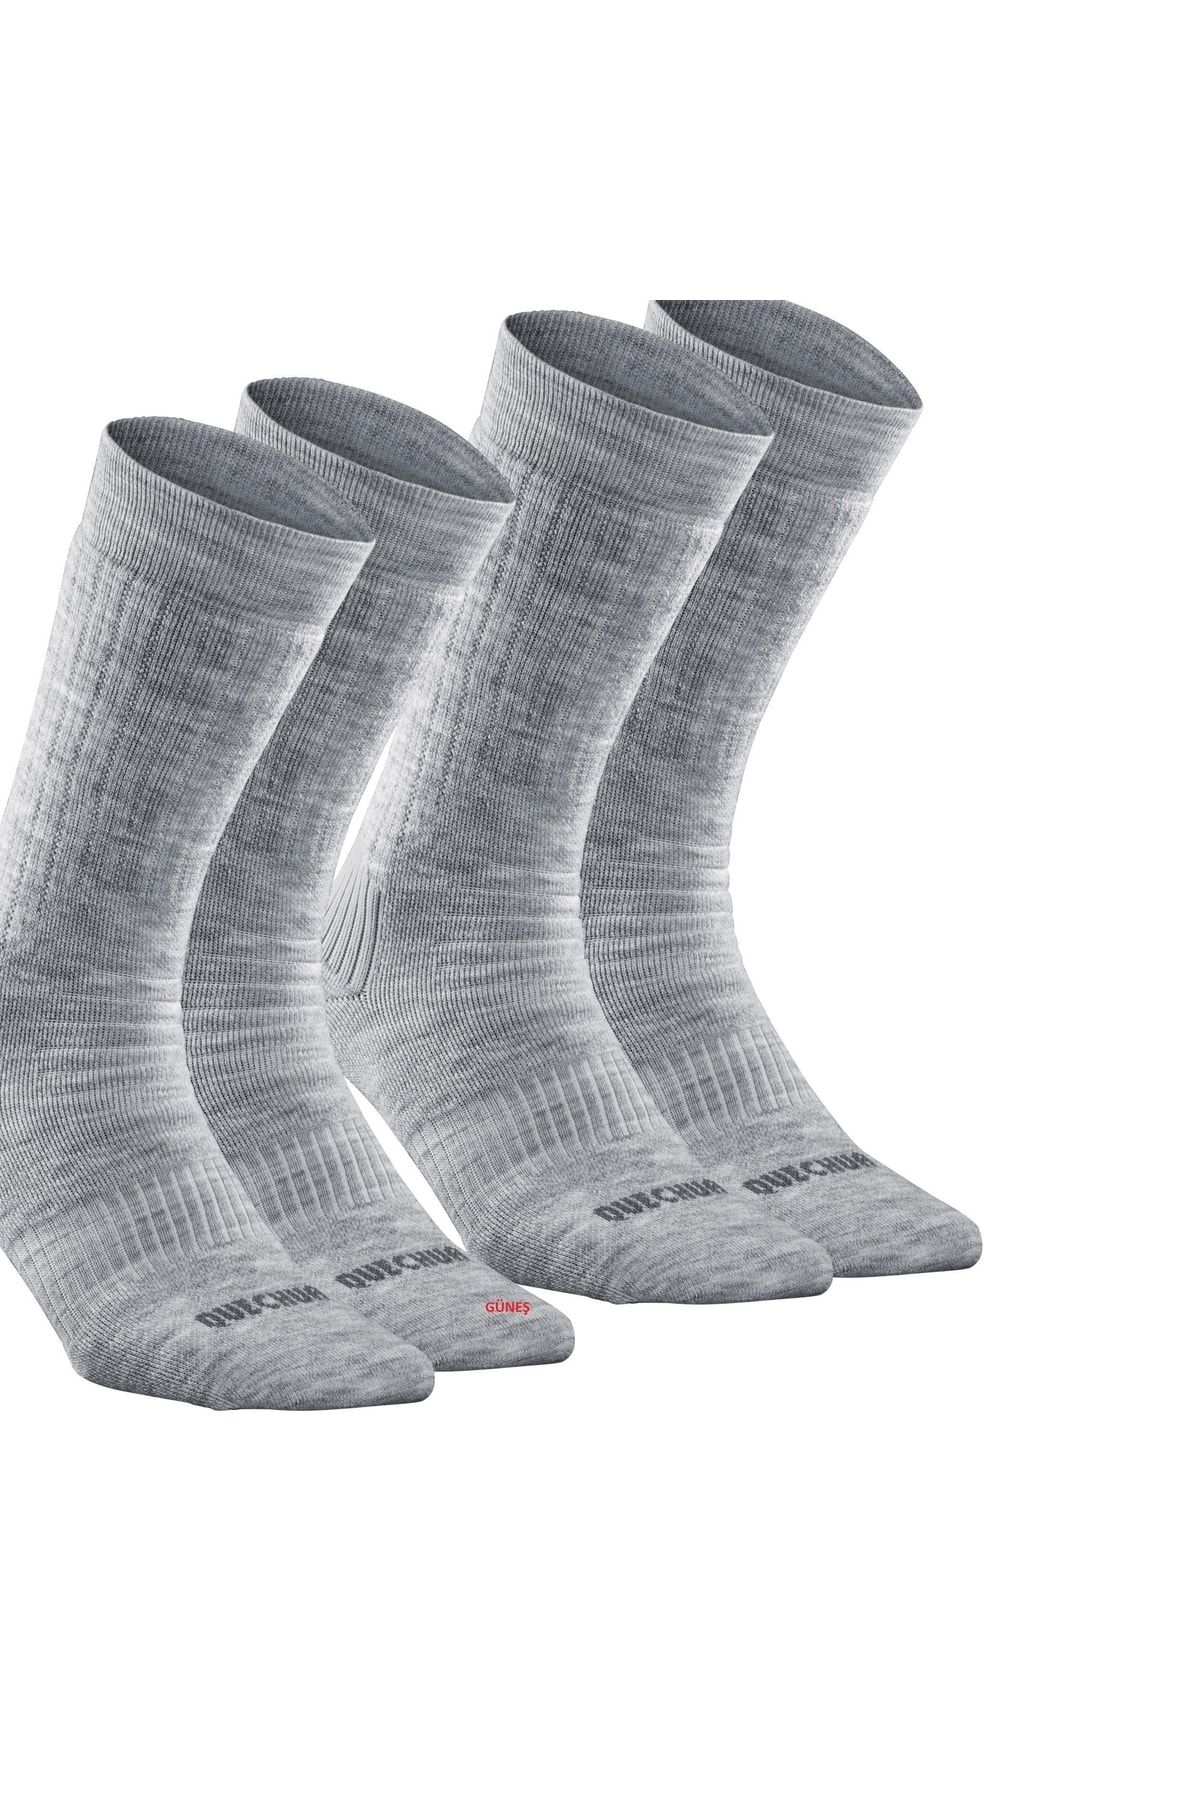 Decathlon - Termal Çorap Yünlü Havlu Kumaşı Yüksek Kalite Dokuma 20 Drc Mükemmel Isı Koruma 2 Çift